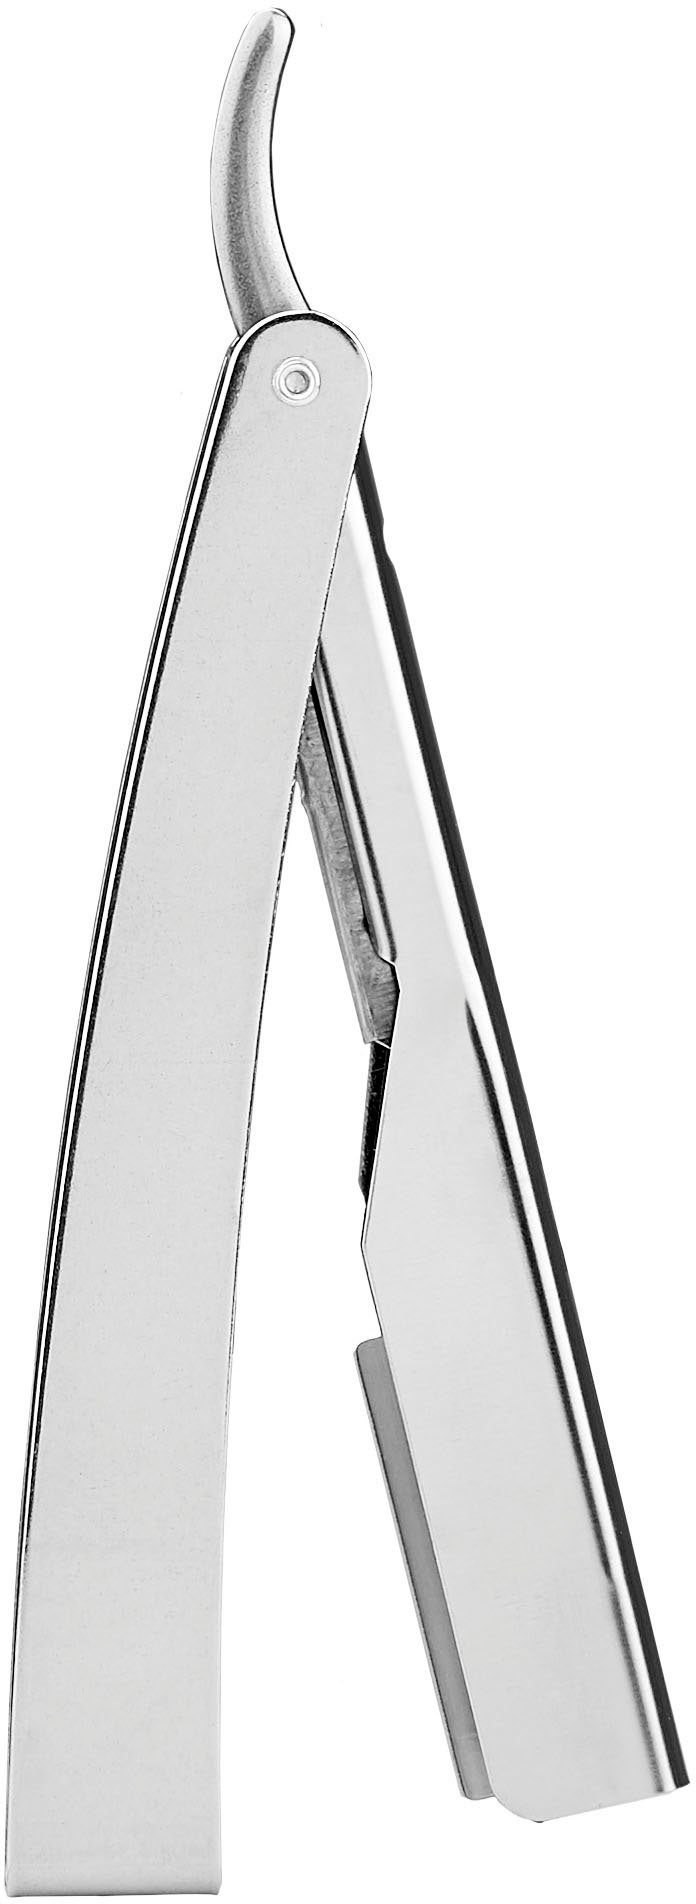 Rasiermesser 1955 praktischem Klappgriff FRIPAC Rasiermesser silberfarben, mit